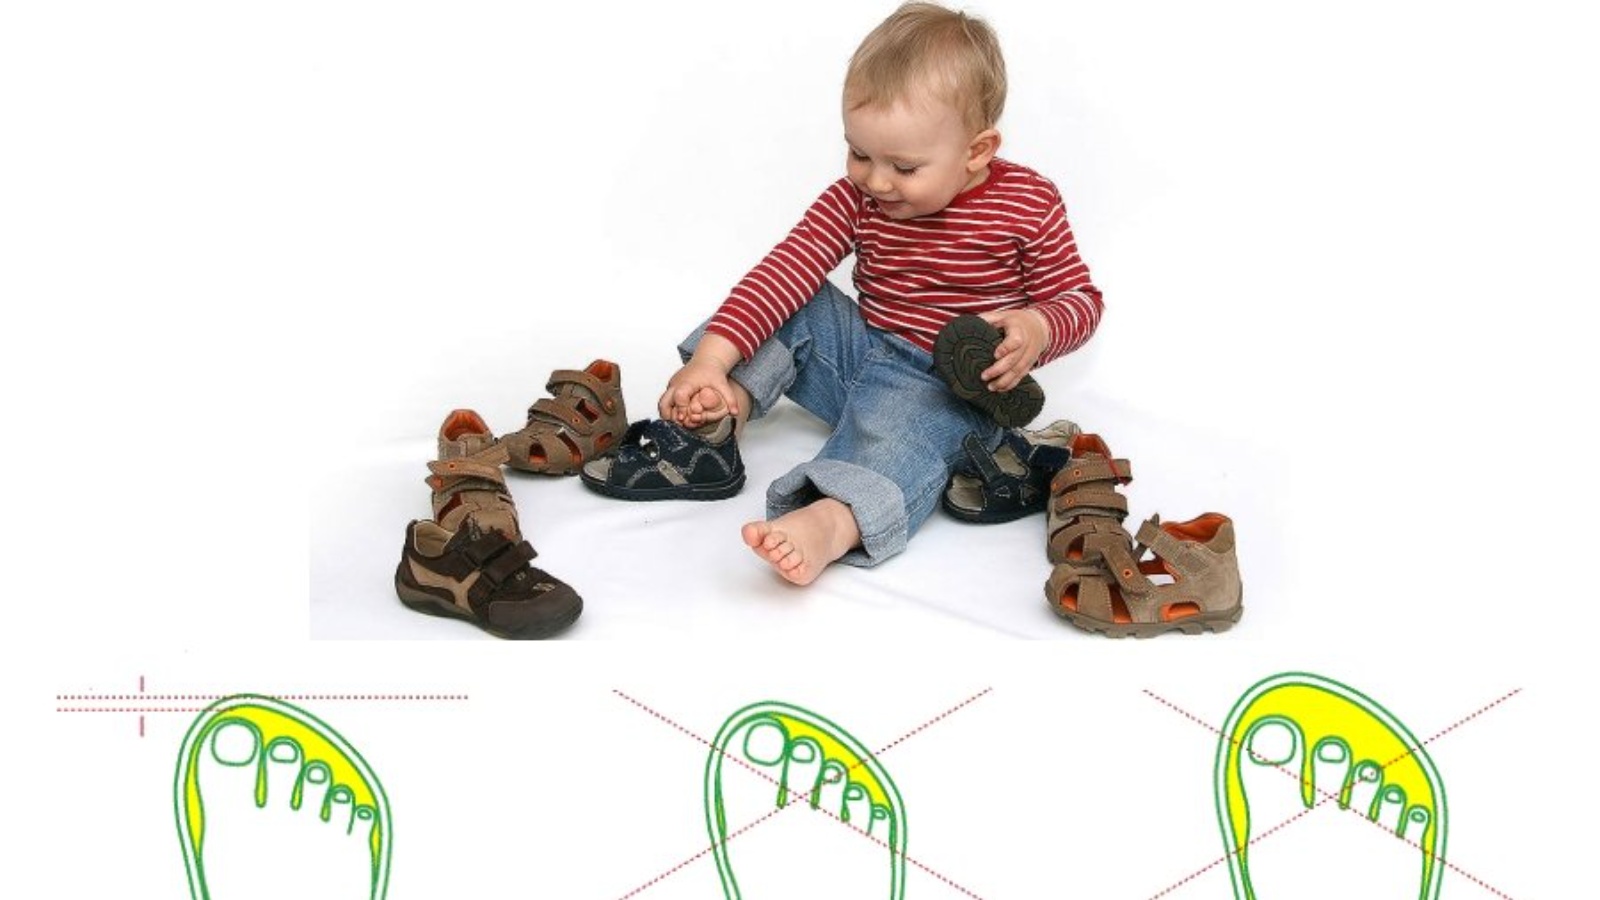 Можно брать обувь. Как правильно выбрать обувь ребенку по размеру. Как правильно подобрать размер обуви ребенку в год. Запас обуви для ребенка. Правильная первая обувь для детей 1 года.